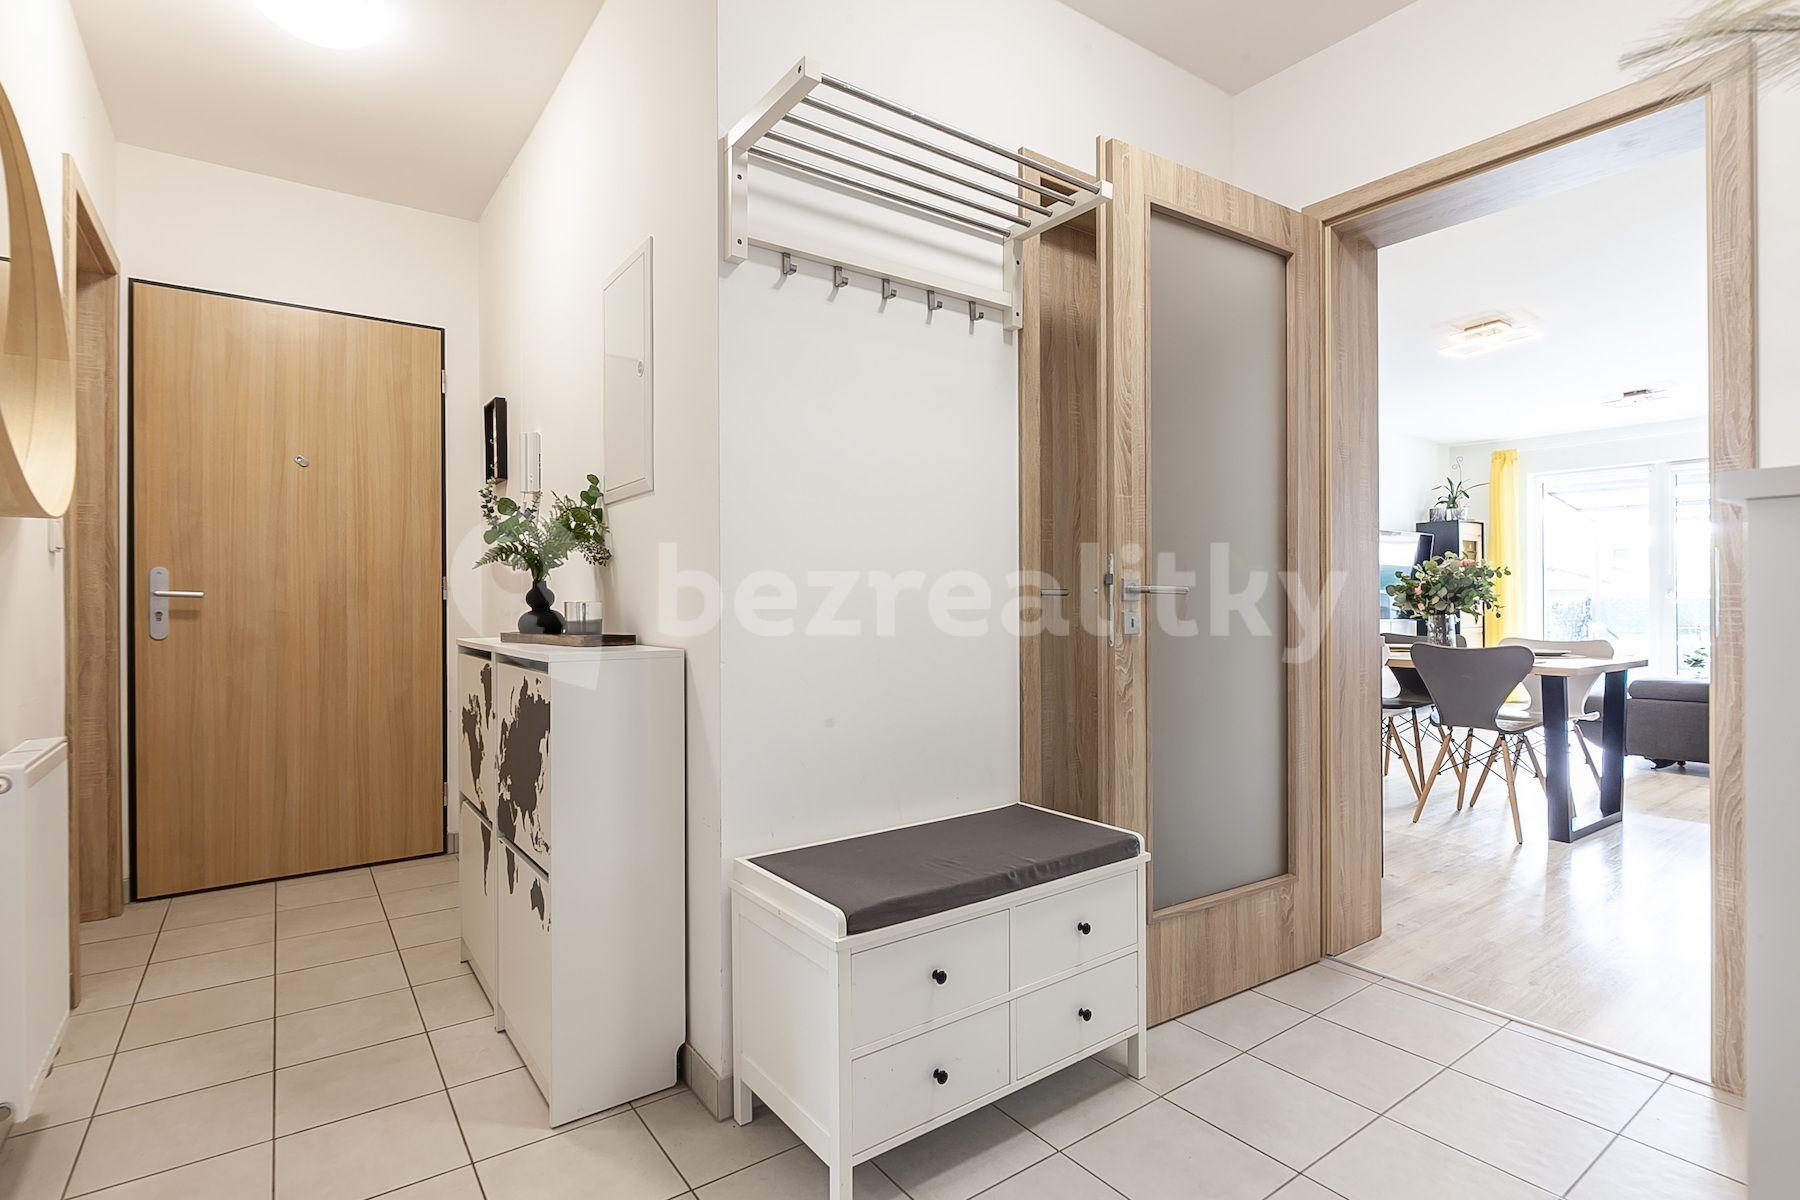 3 bedroom with open-plan kitchen flat for sale, 96 m², U Parketárny, Unhošť, Středočeský Region